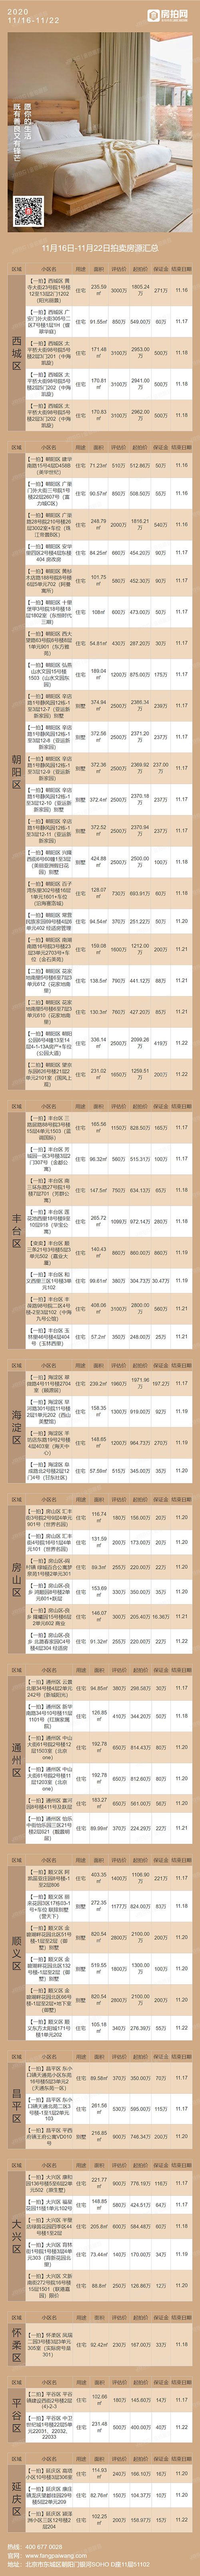 北京11月16日-11月22日法拍房源列表